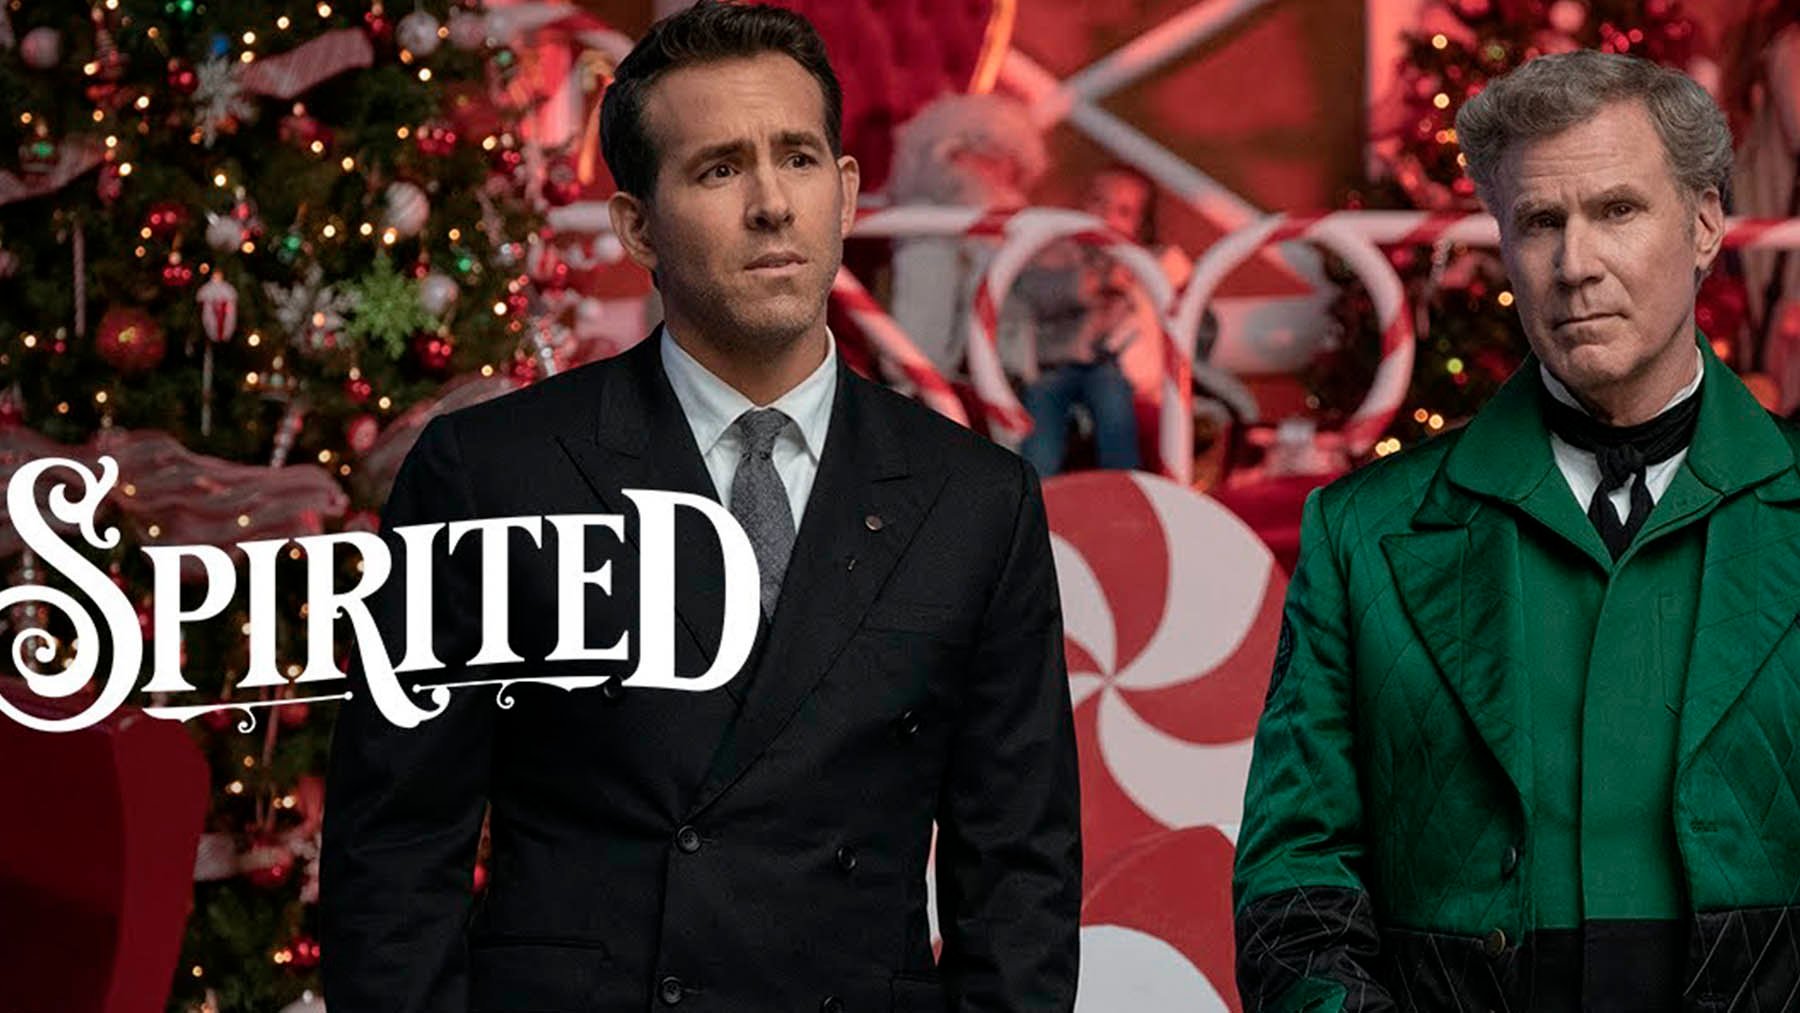 Tráiler de ‘Spirited’: Ryan Reynolds, Will Ferrell y el espíritu navideño en Apple TV +